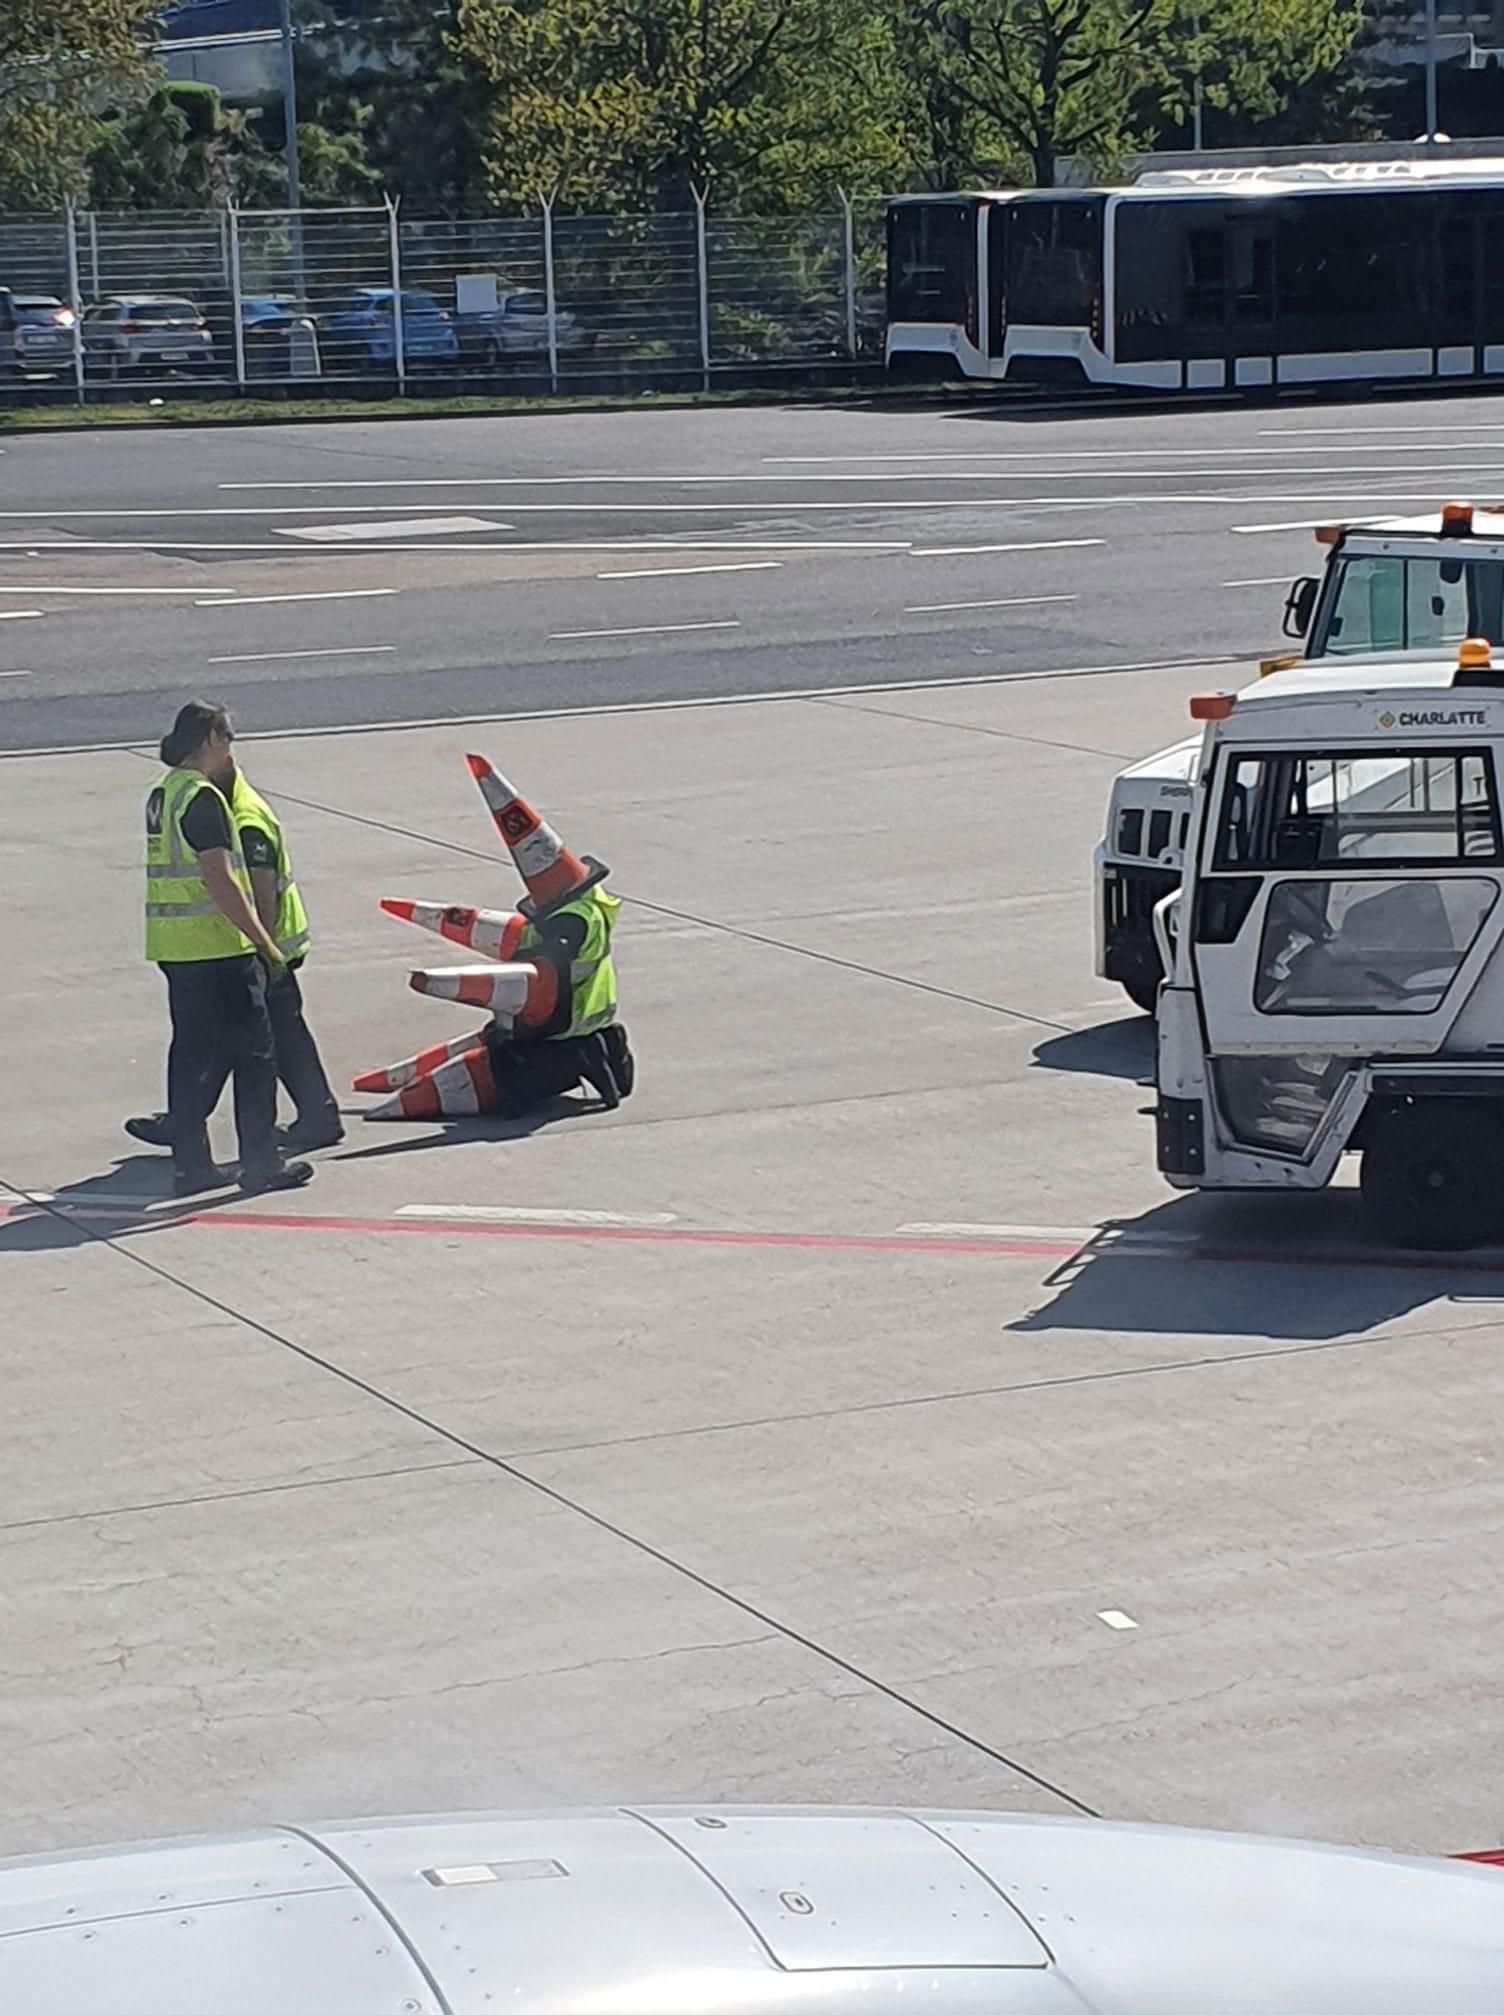 Workers at Prague airport having fun